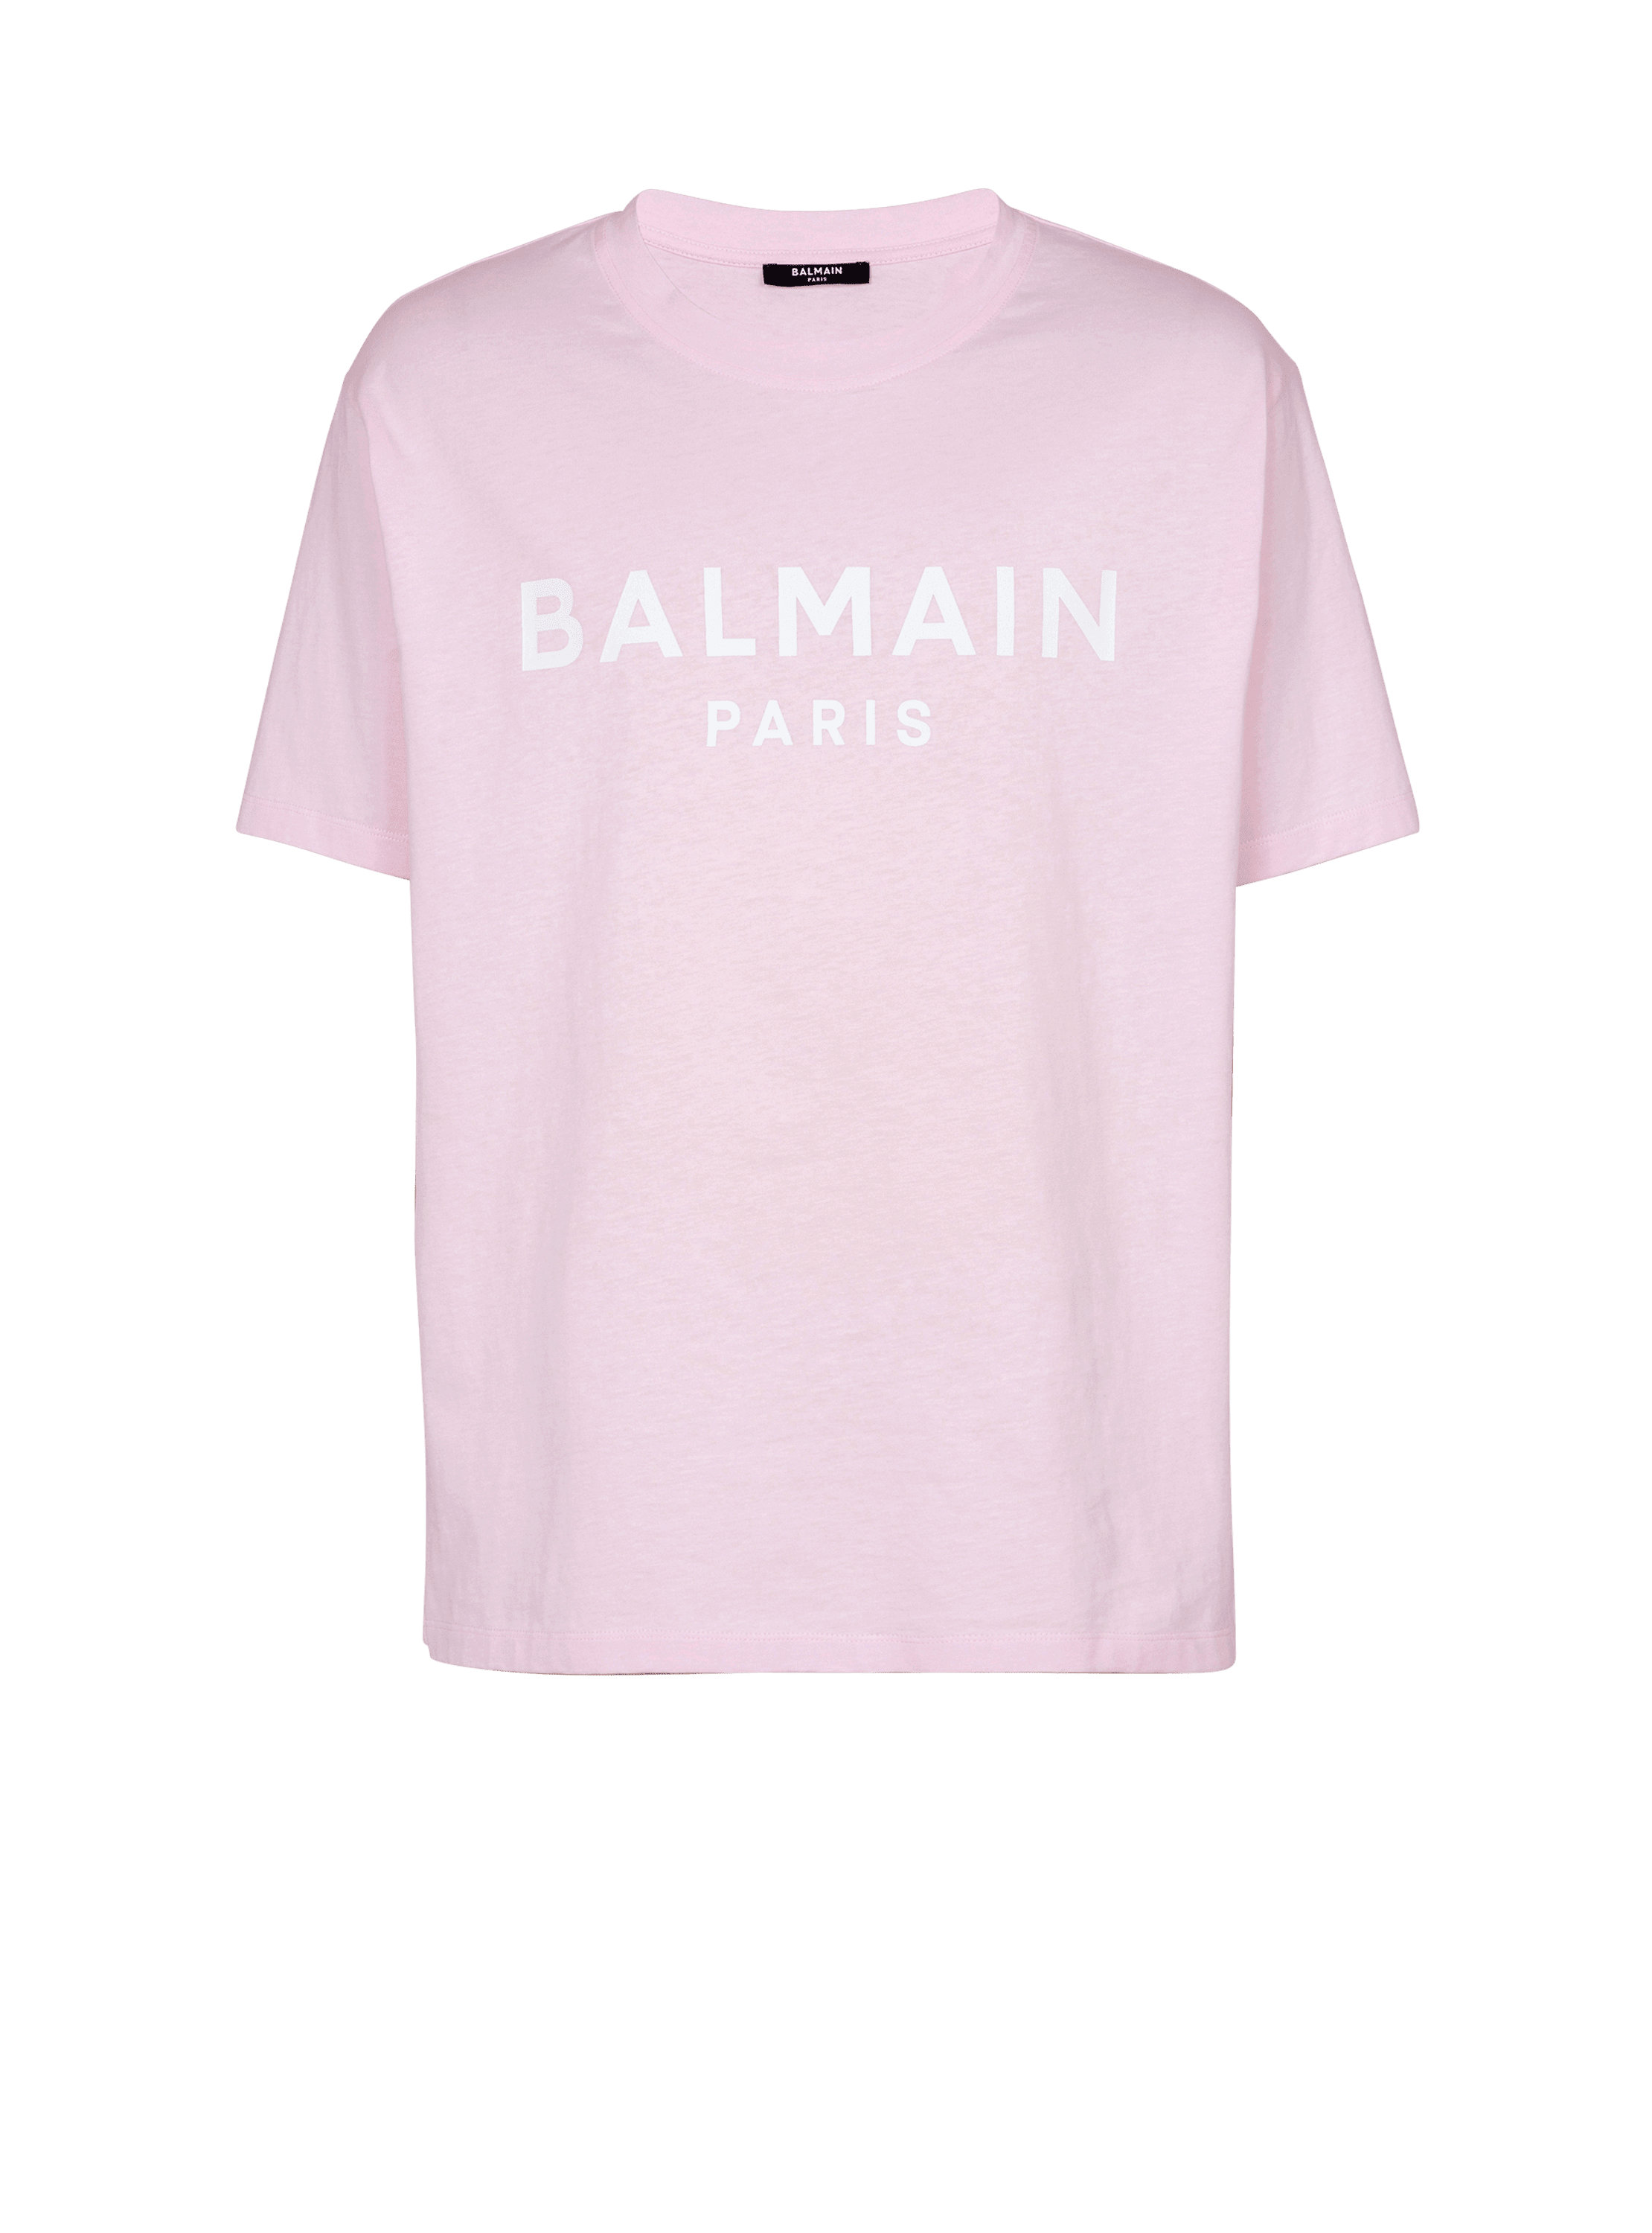 Kurzärmeliges T-Shirt mit Balmain Paris-Print